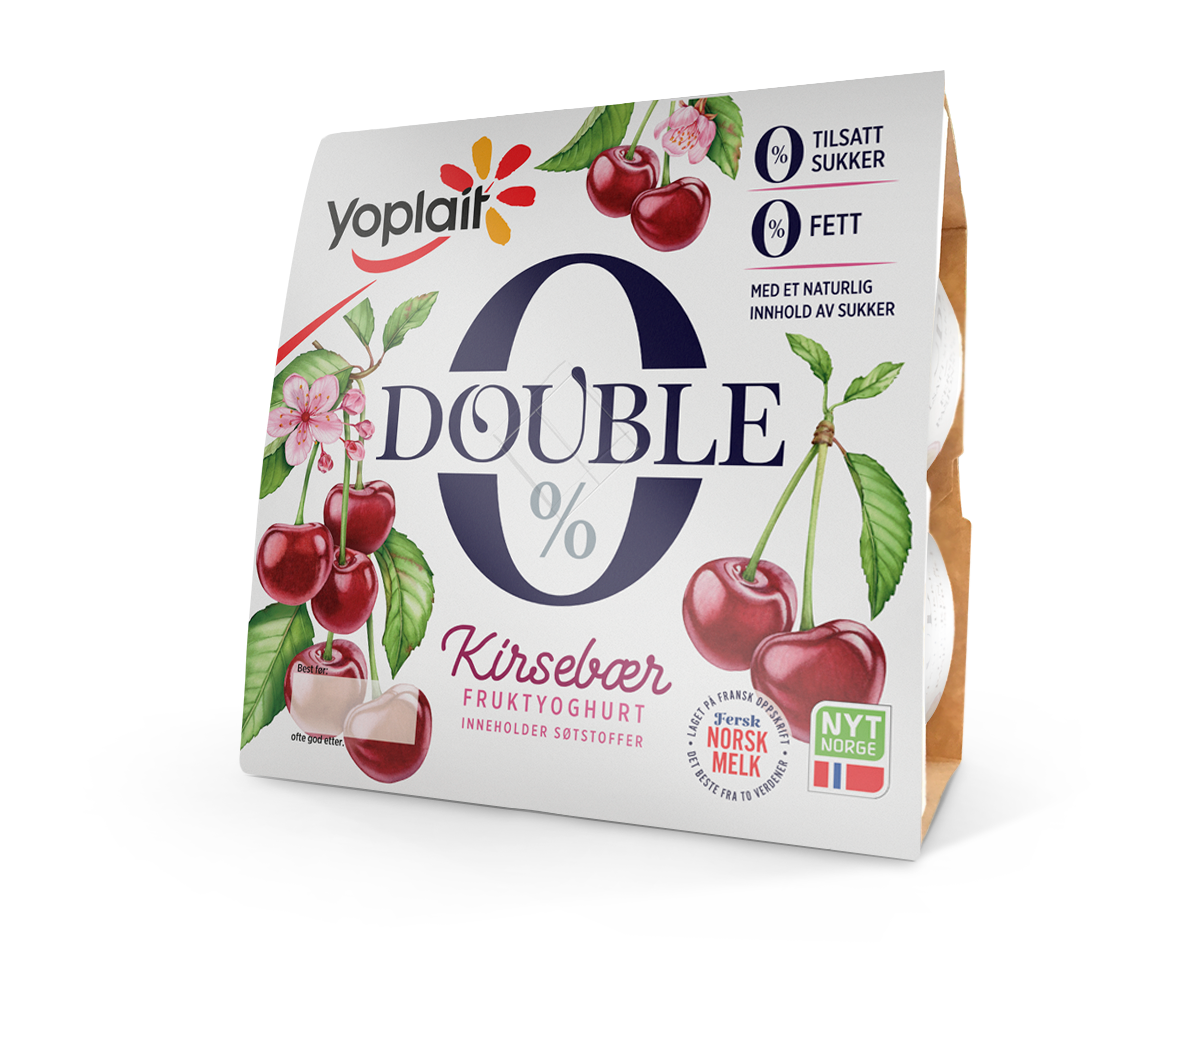 Double 0% Kirsebær